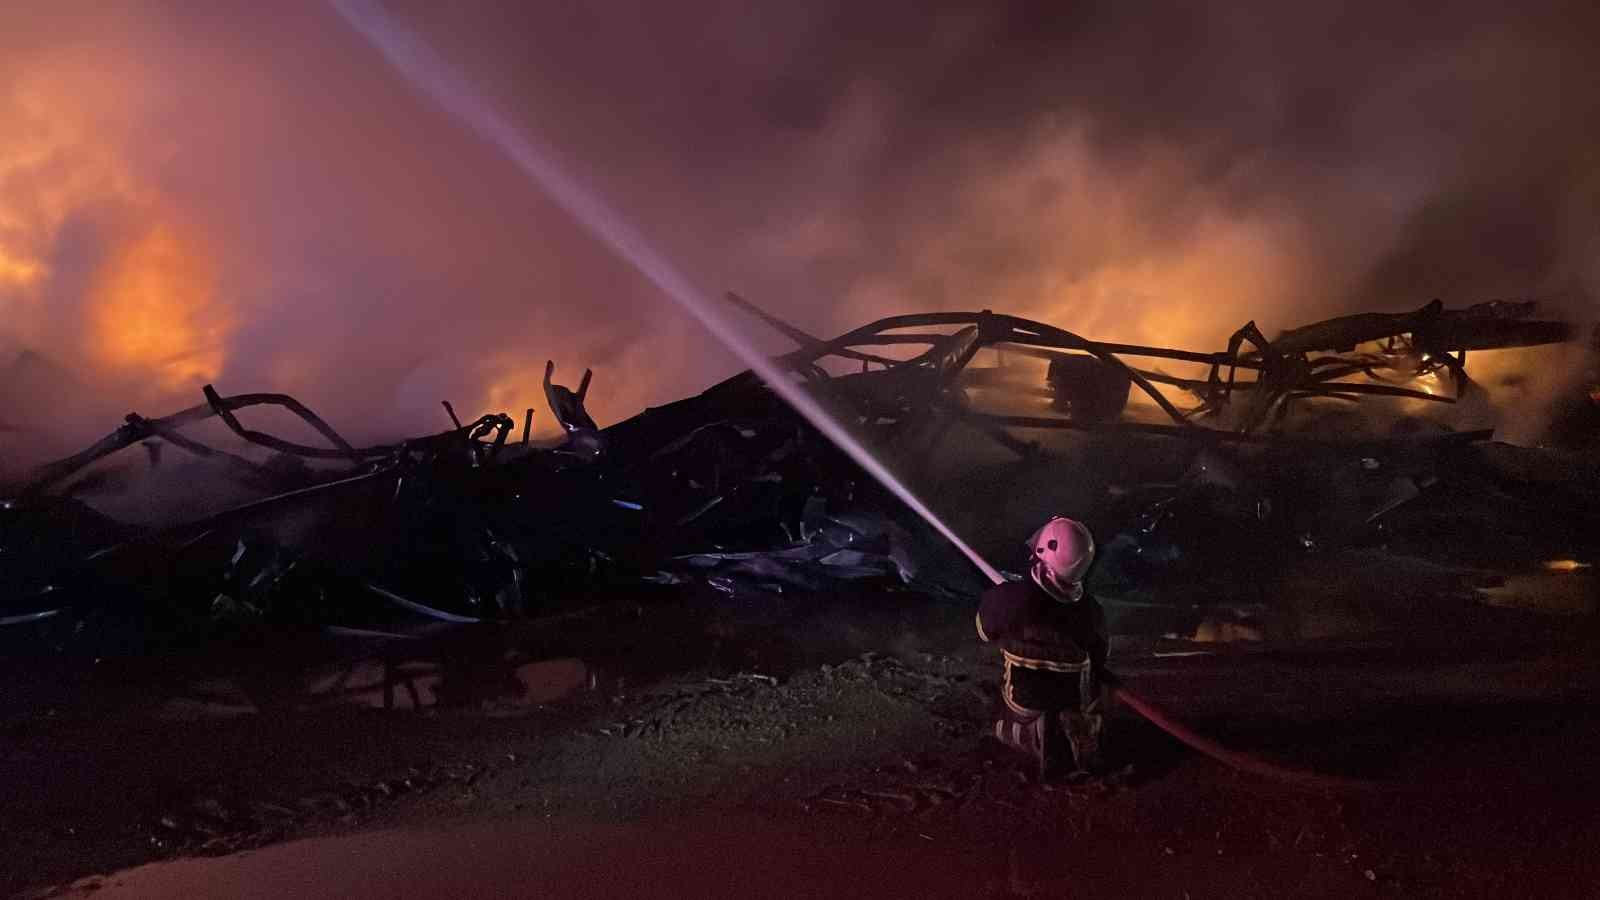 Düzce Valiliğinden fabrika yangını açıklaması: Yangın kontrol altına alındı #duzce